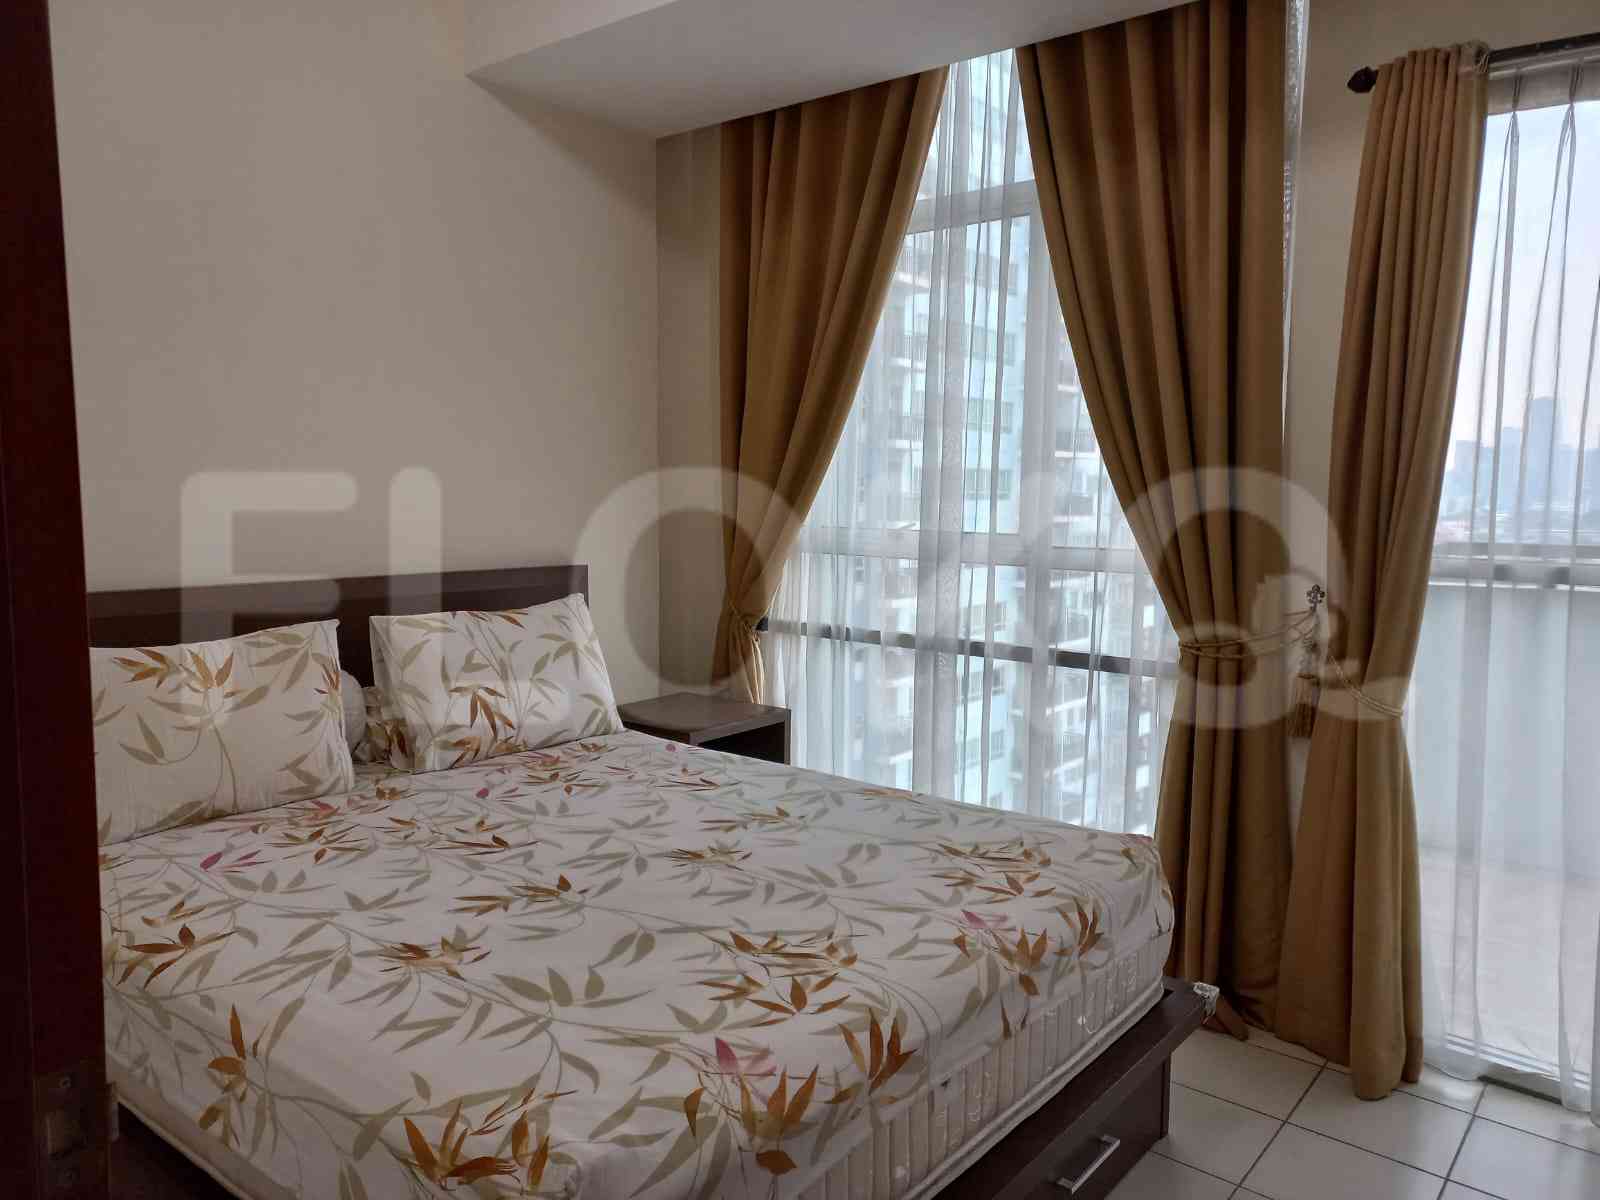 Tipe 1 Kamar Tidur di Lantai 11 untuk disewakan di Marbella Kemang Residence Apartemen - fke993 2